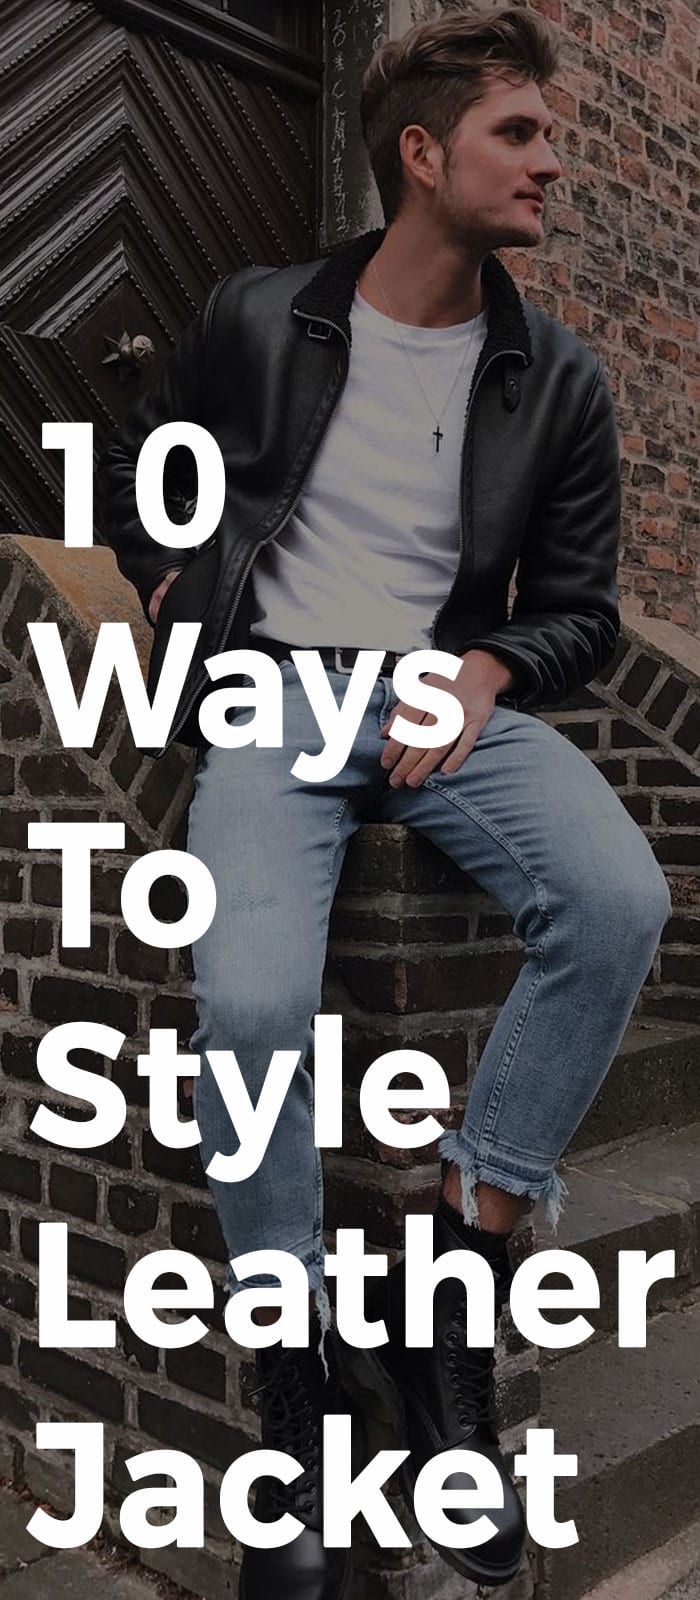 10 Ways To Style Leather Jacket.